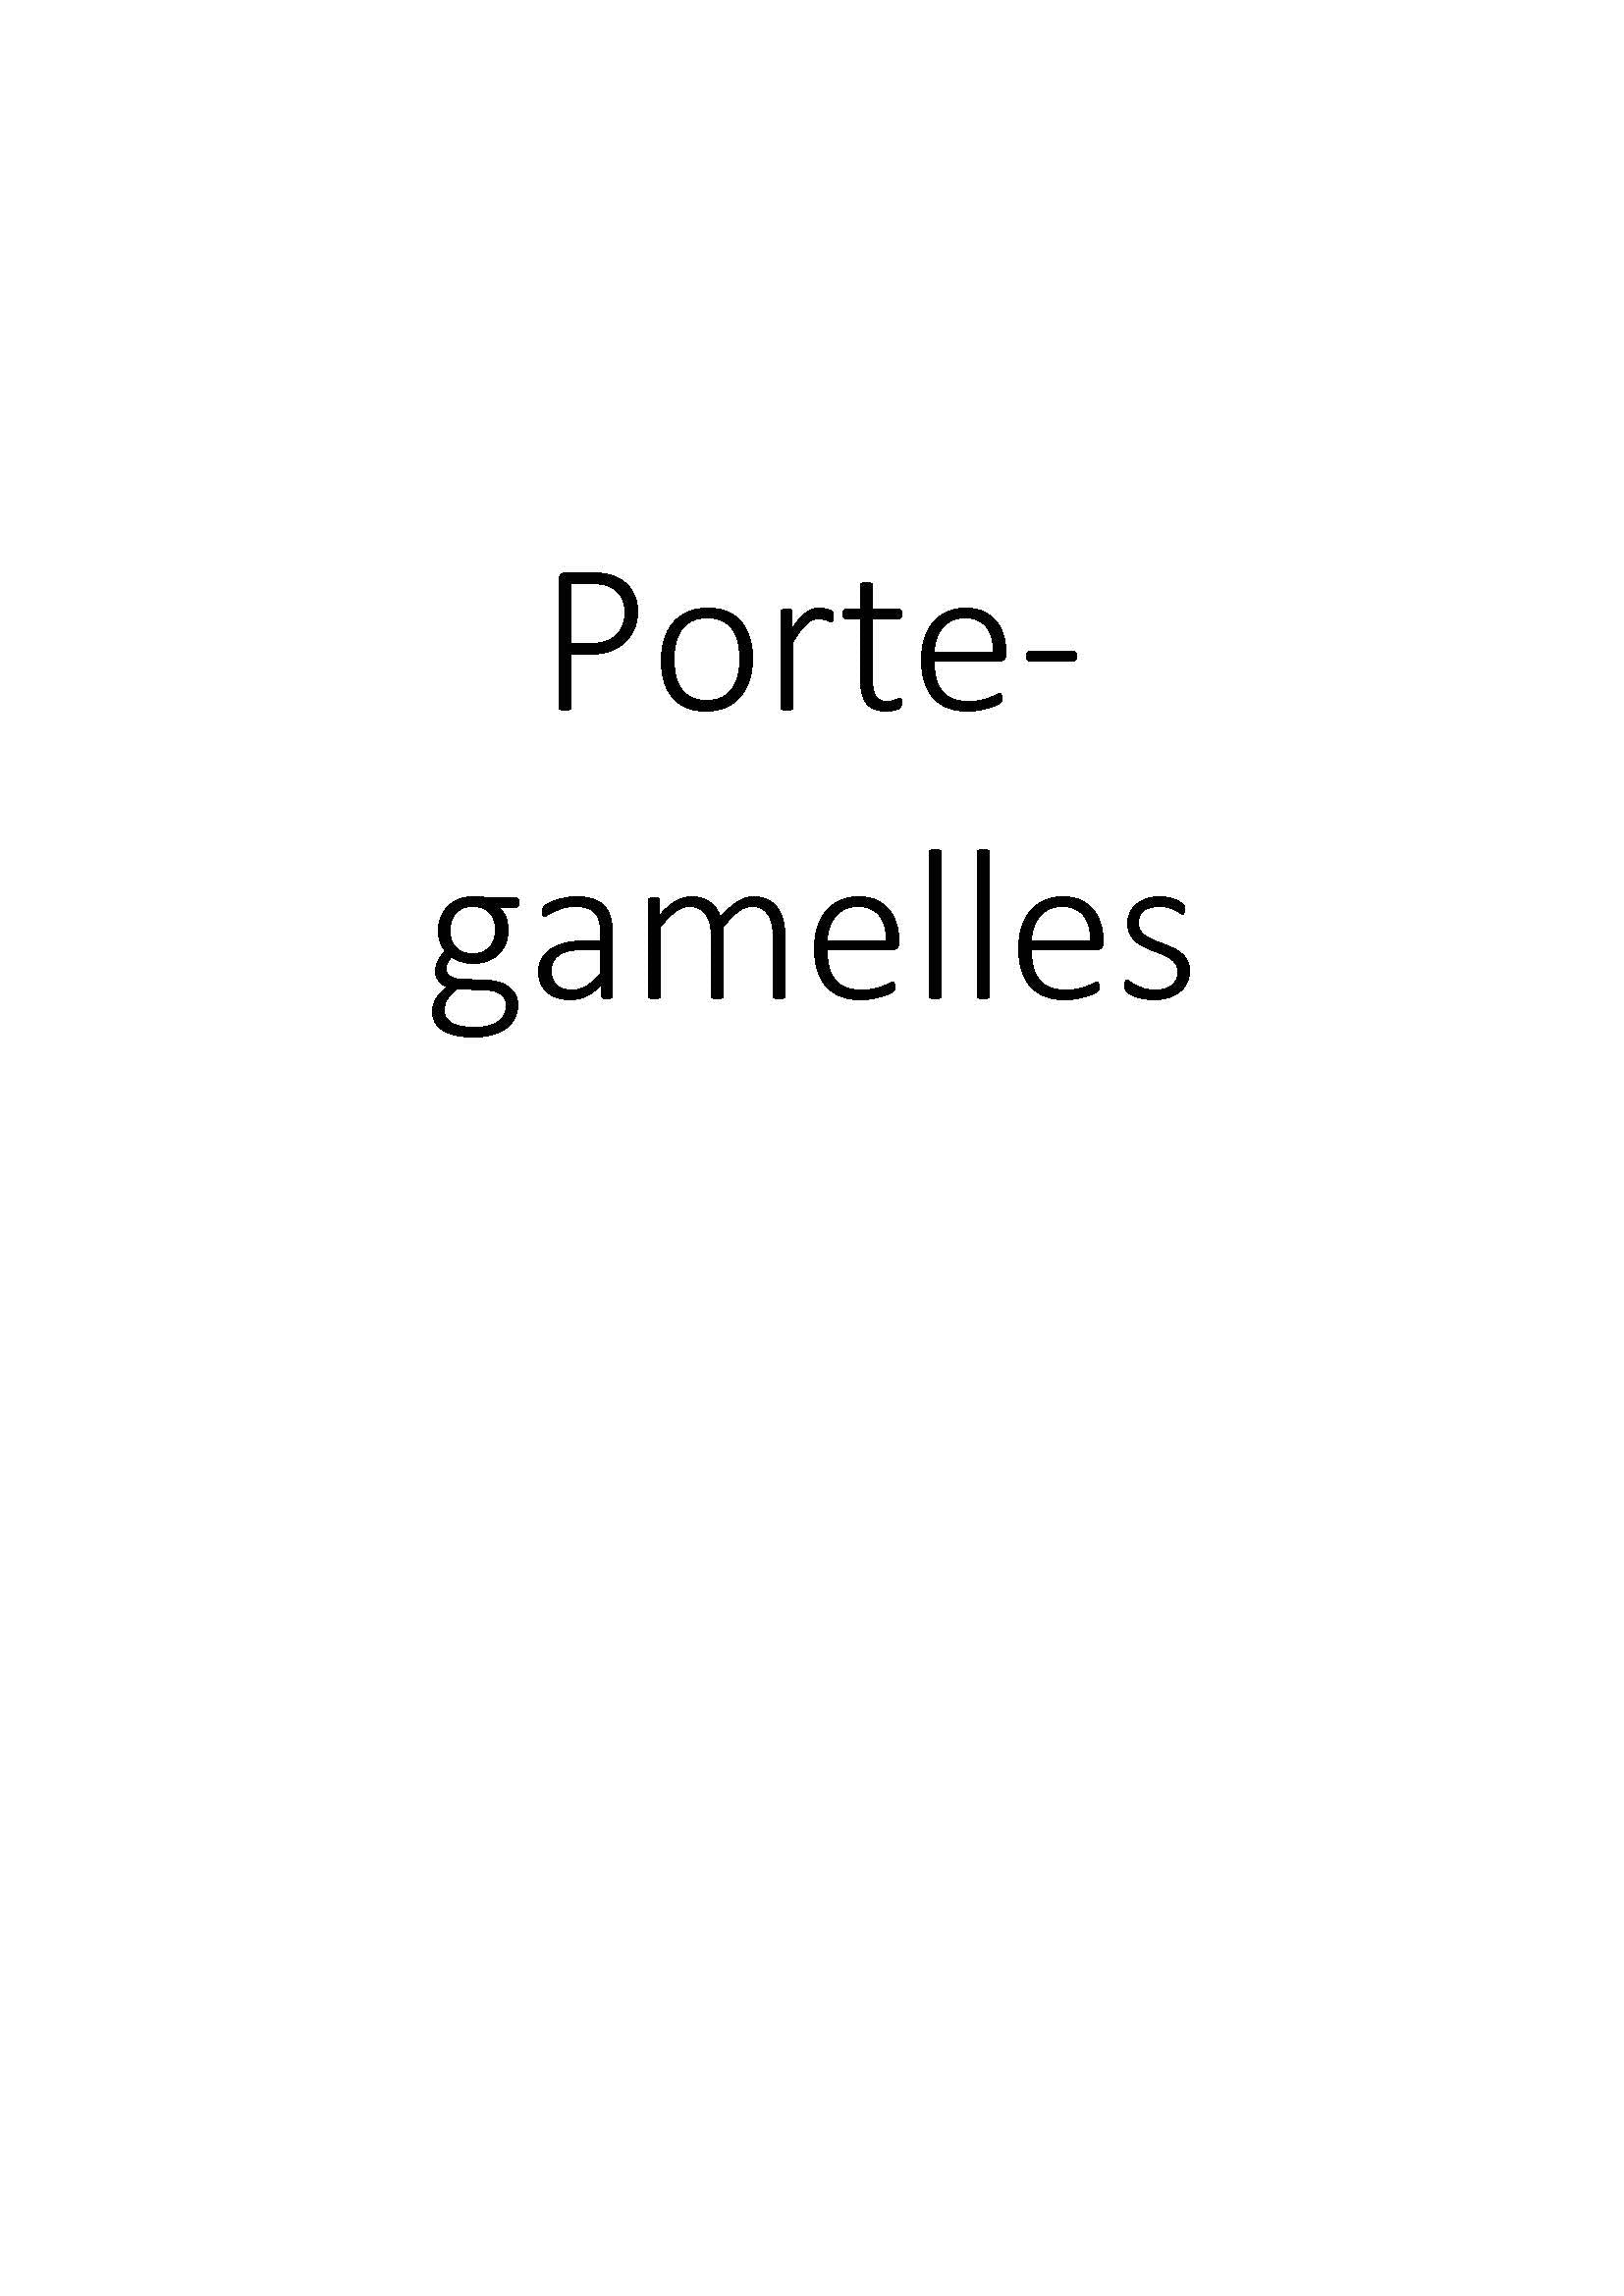 Porte-gamelles clicktofournisseur.com